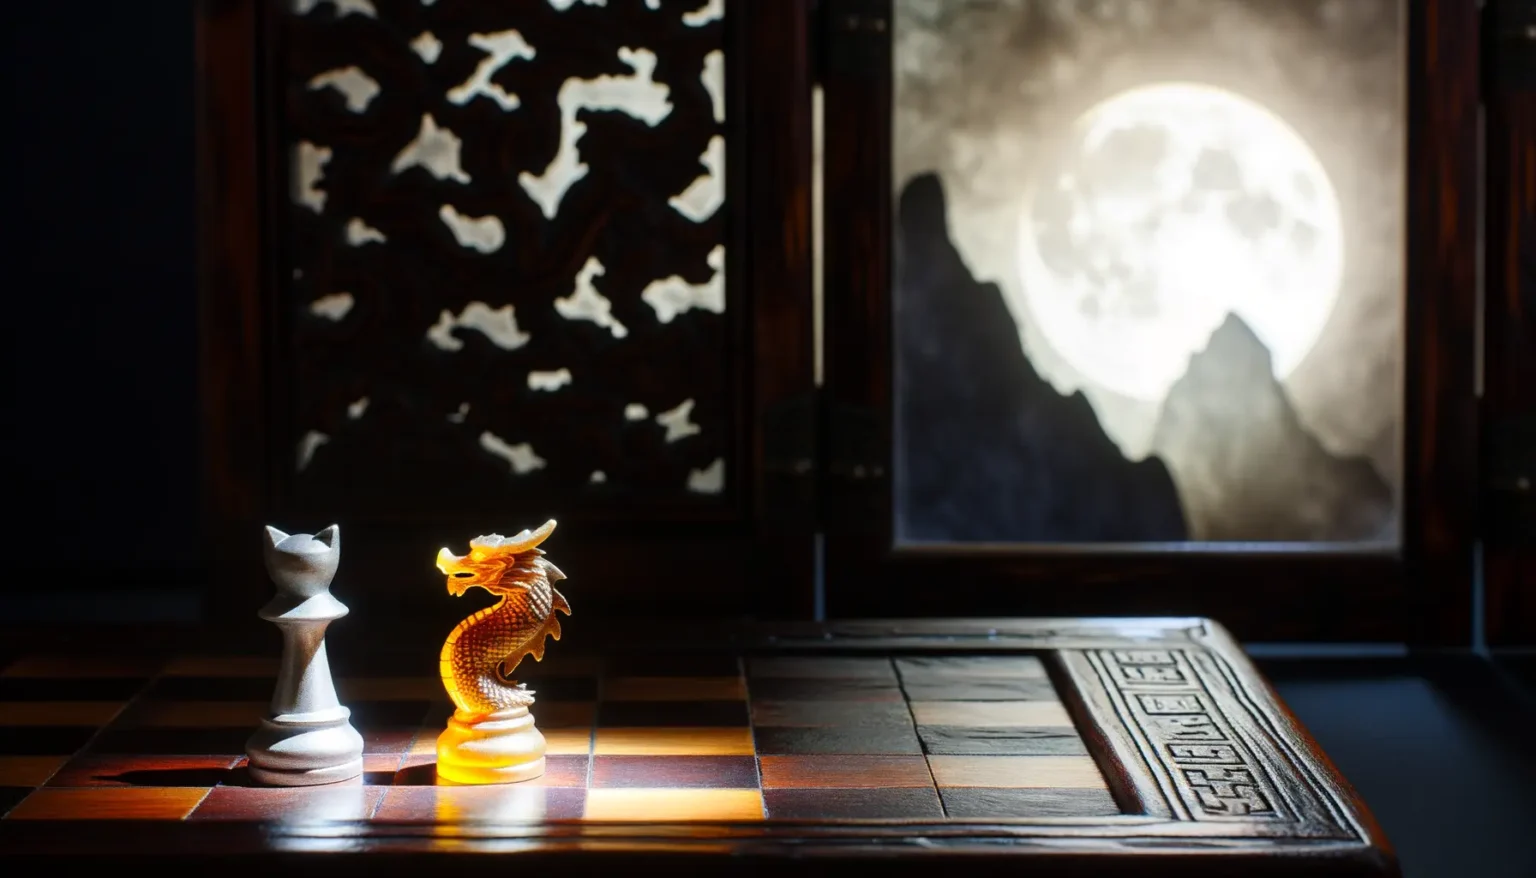 Ein Schachbrett im Vordergrund mit einer weißen Figur, die einem König ähnelt, und einer hervorgehobenen goldfarbenen Drachenfigur, die sich gegenüberstehen. Im Hintergrund ist durch ein Fenster mit asiatischen Mustern der volle Mond hinter Bergsilhouetten zu sehen.